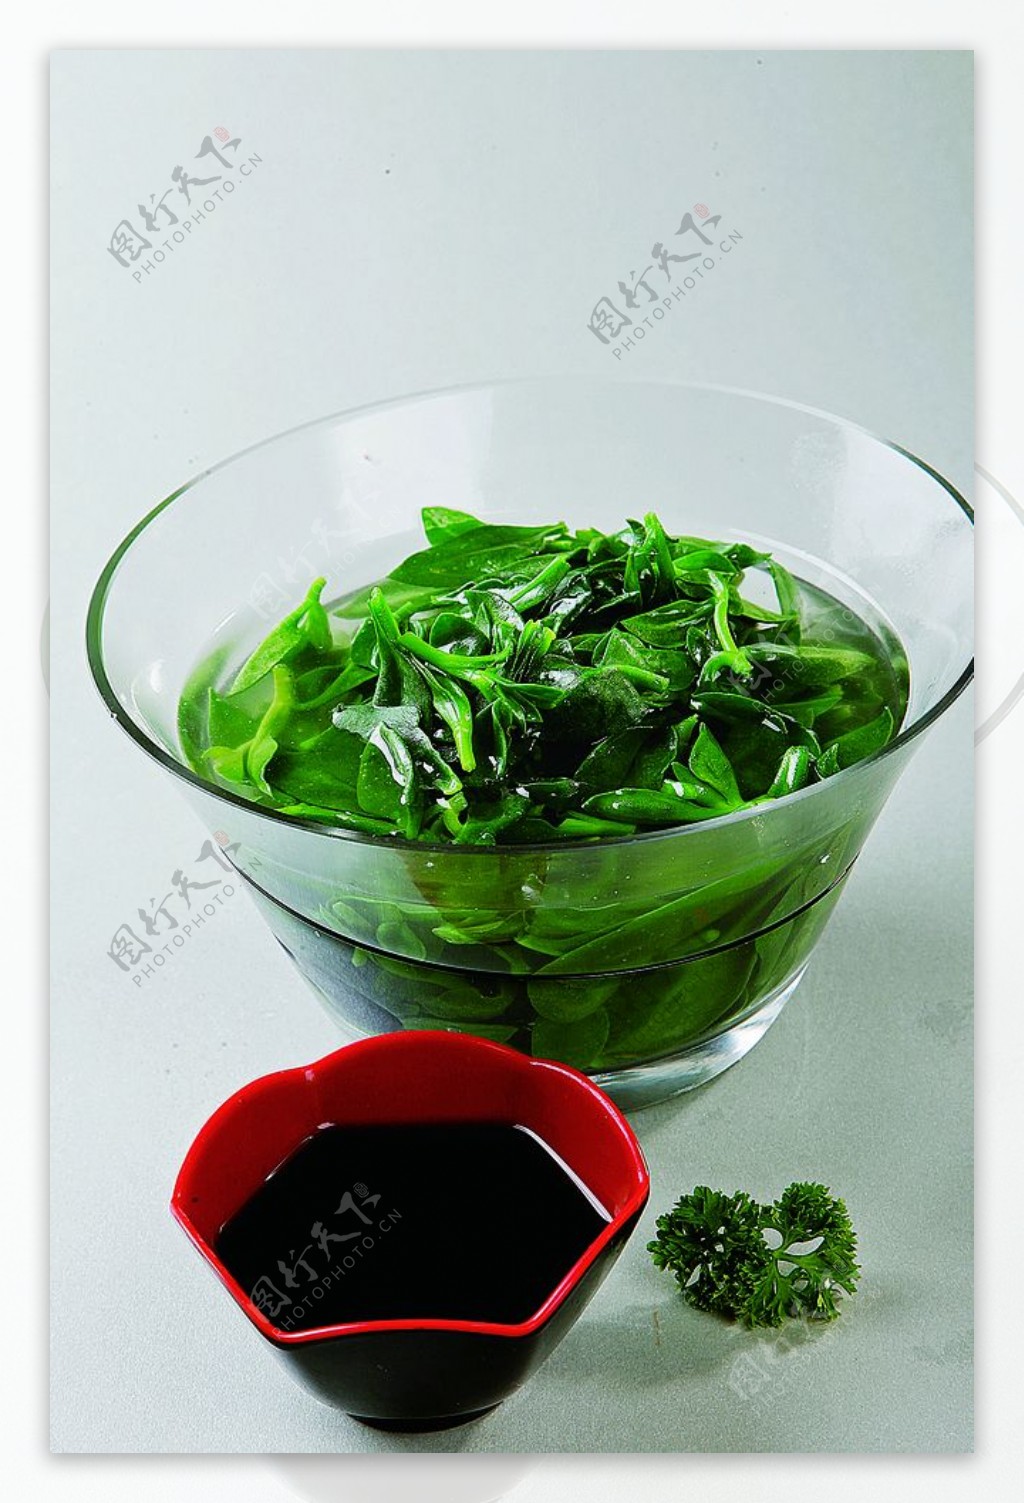 浙菜捞汁西洋菜图片